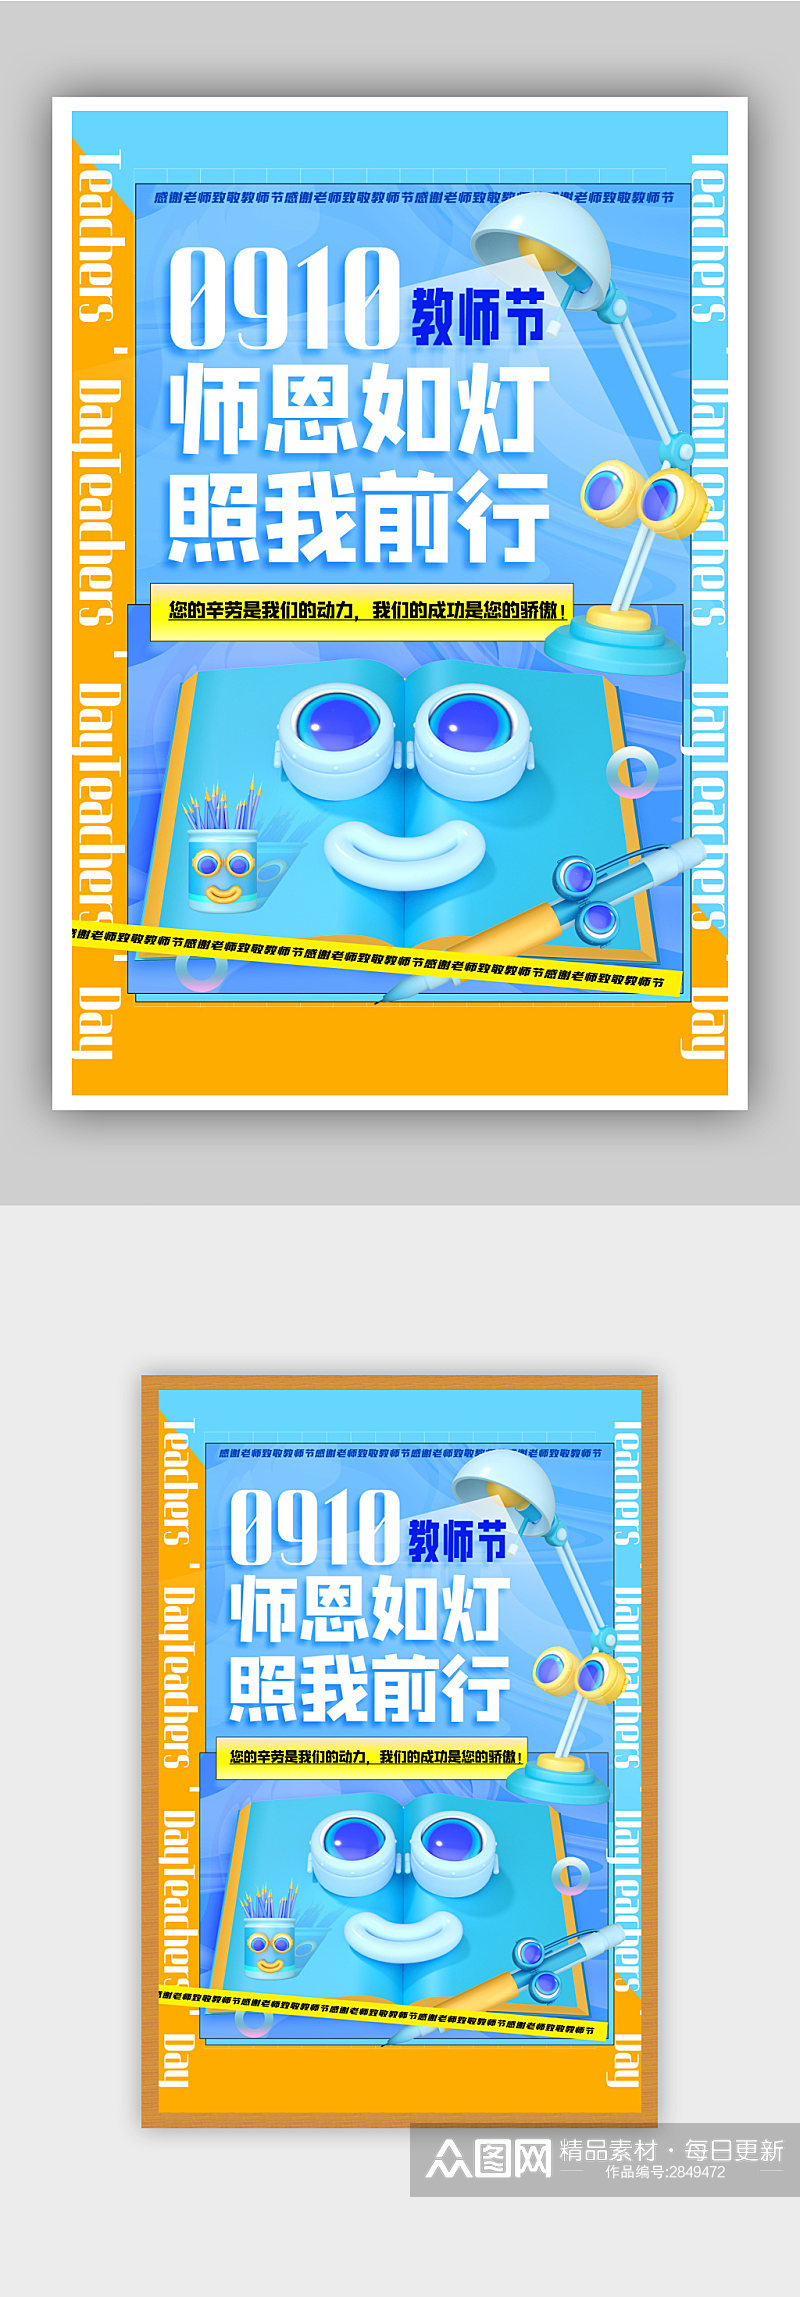 蓝色酸性风3d微粒体教师节海报素材